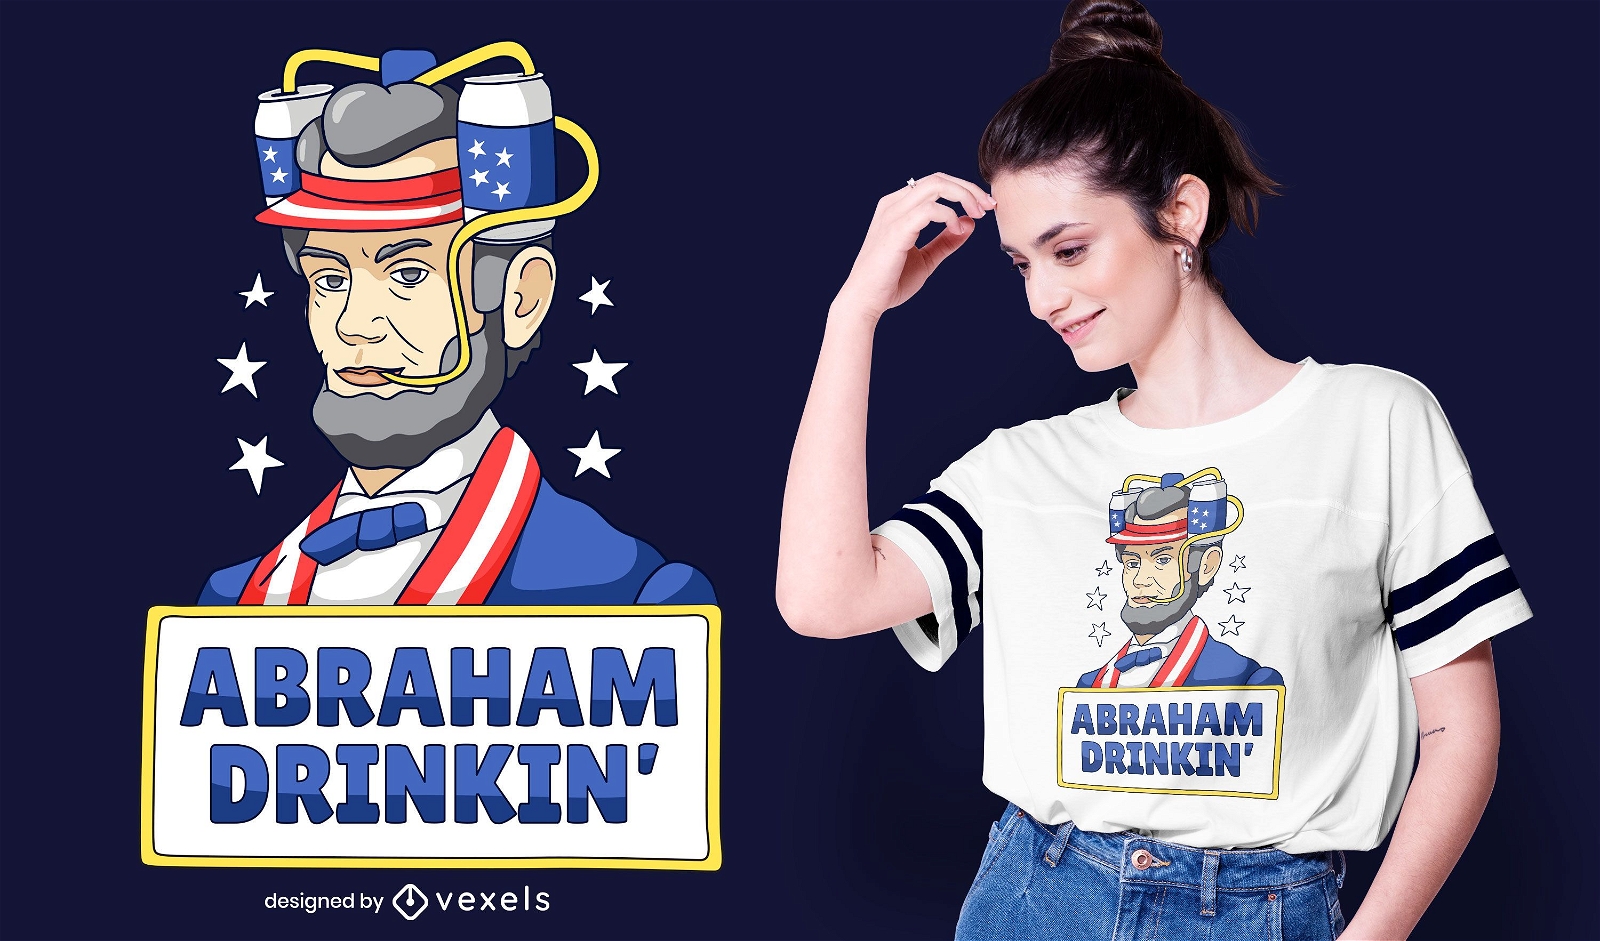 Abraham drinkin' t-shirt design